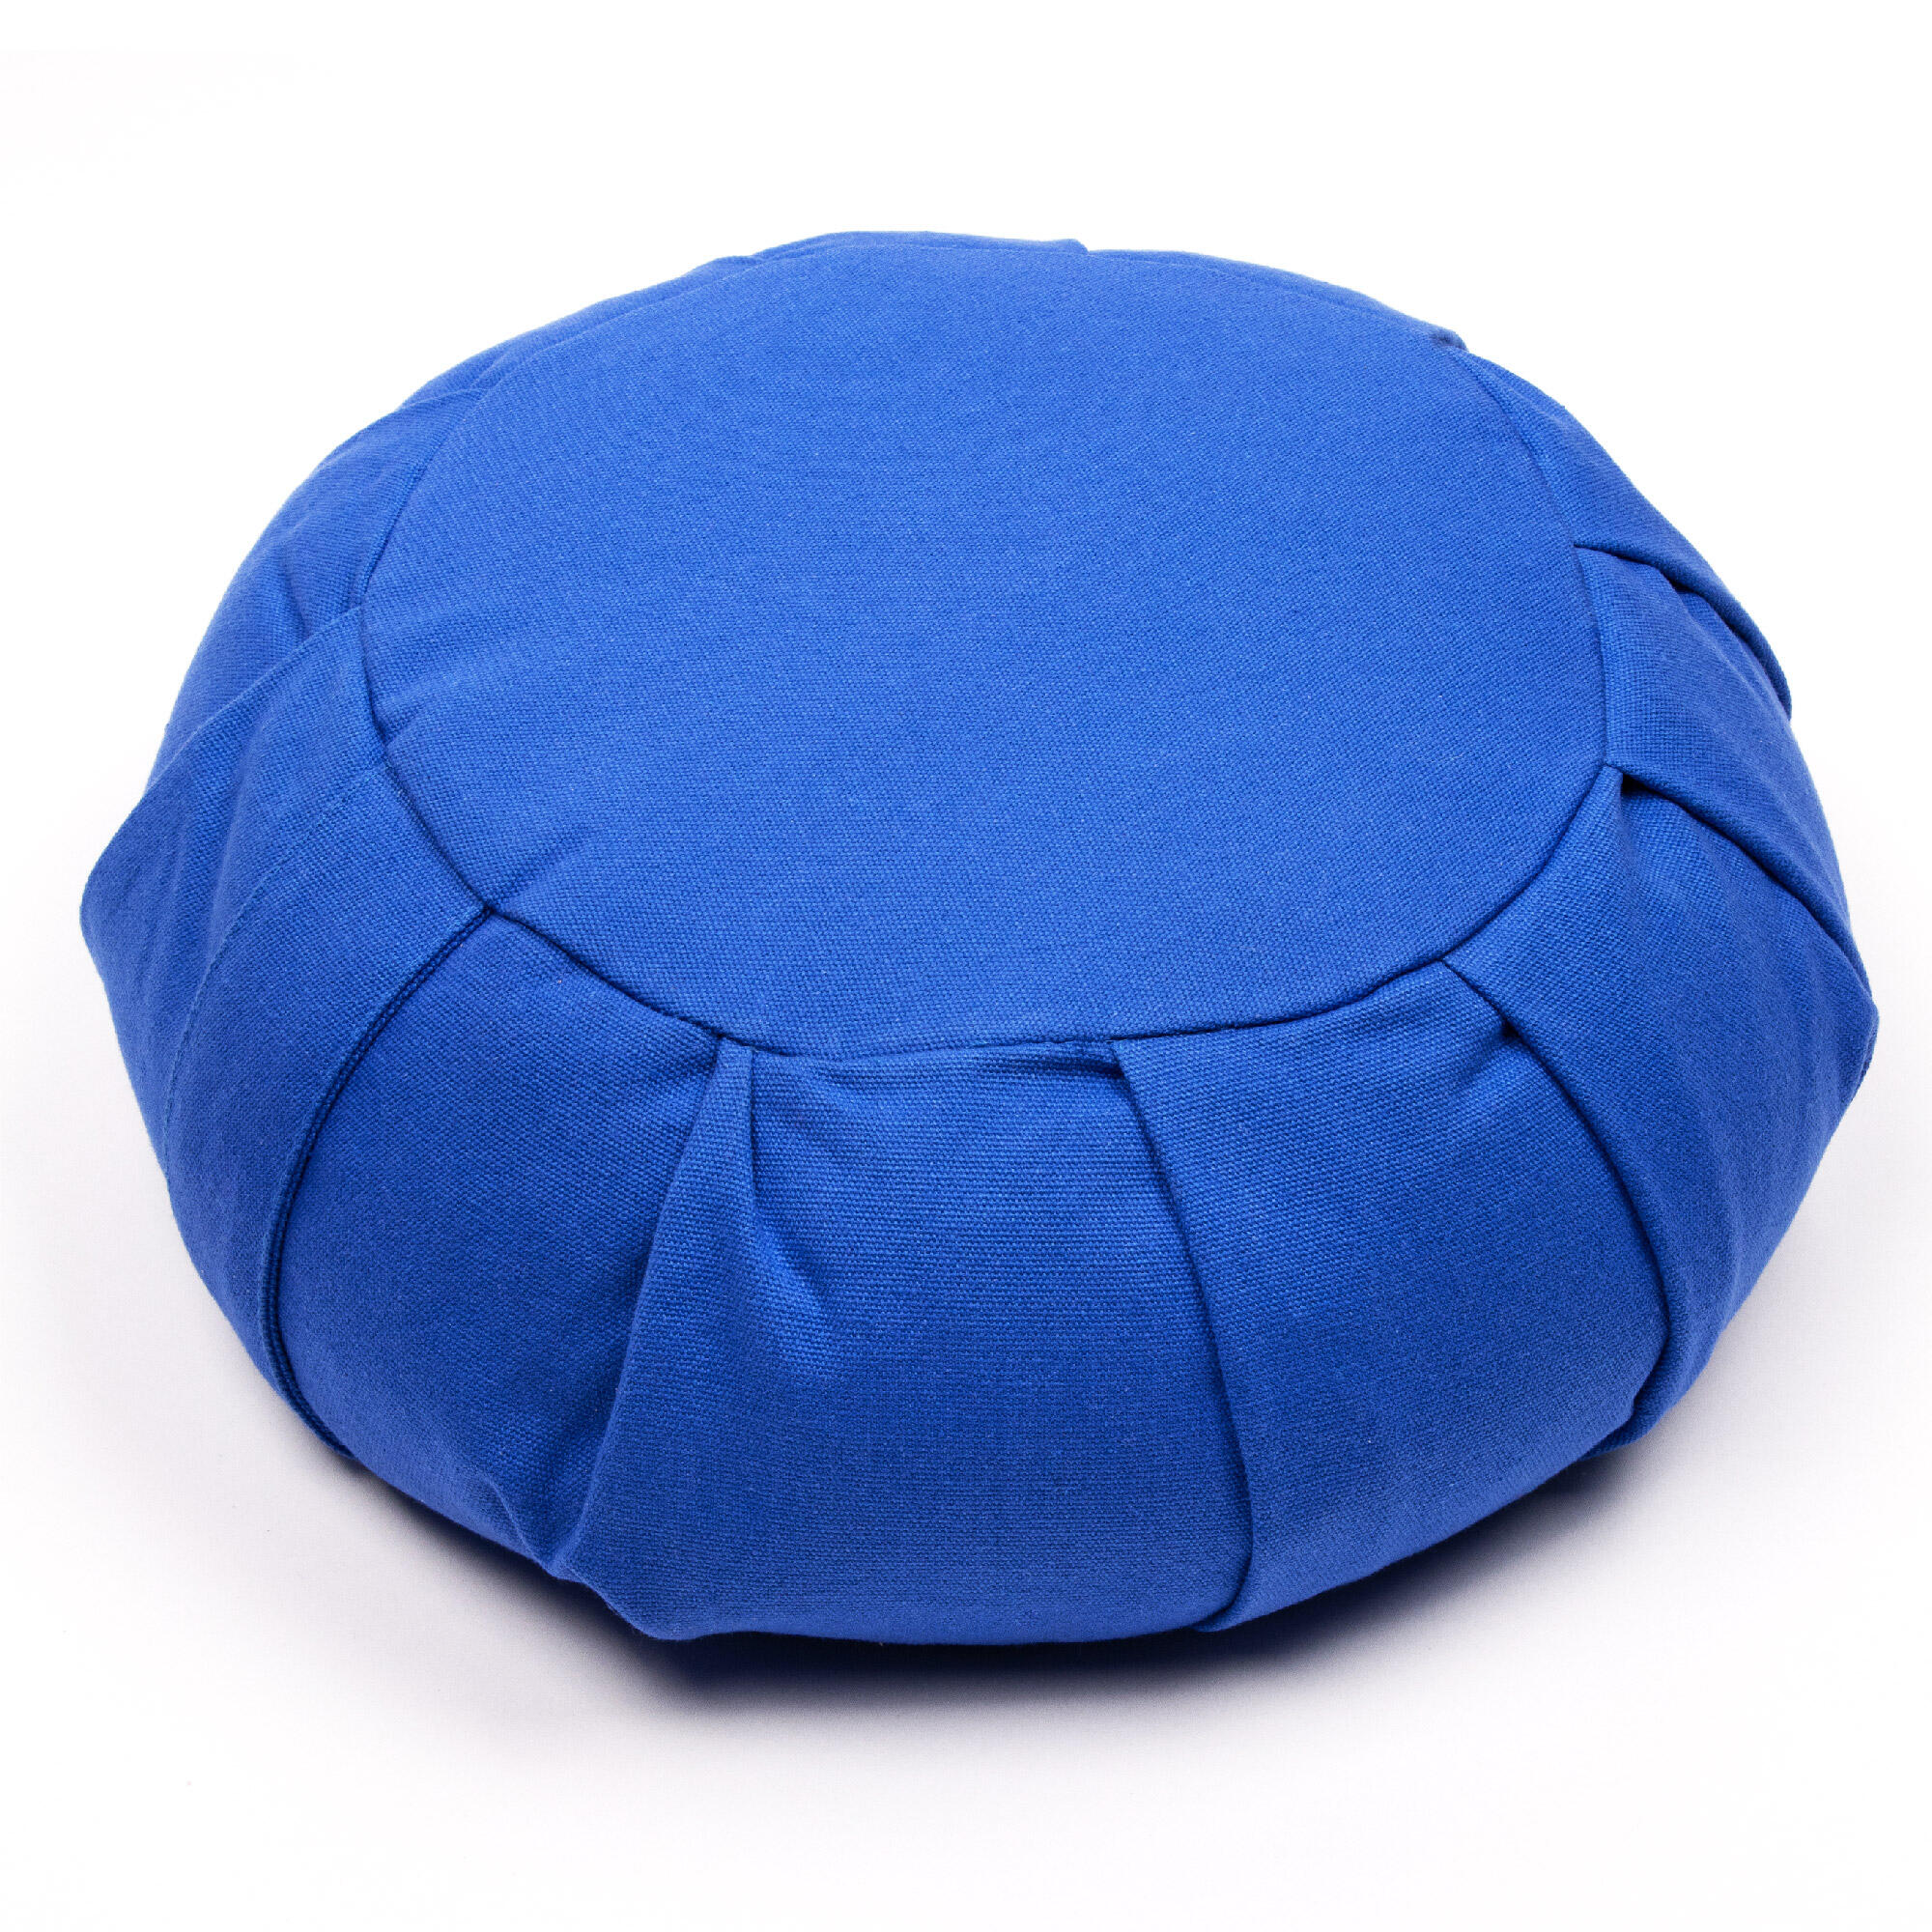 MYGA Myga Zafu Meditation Cushion - Blue